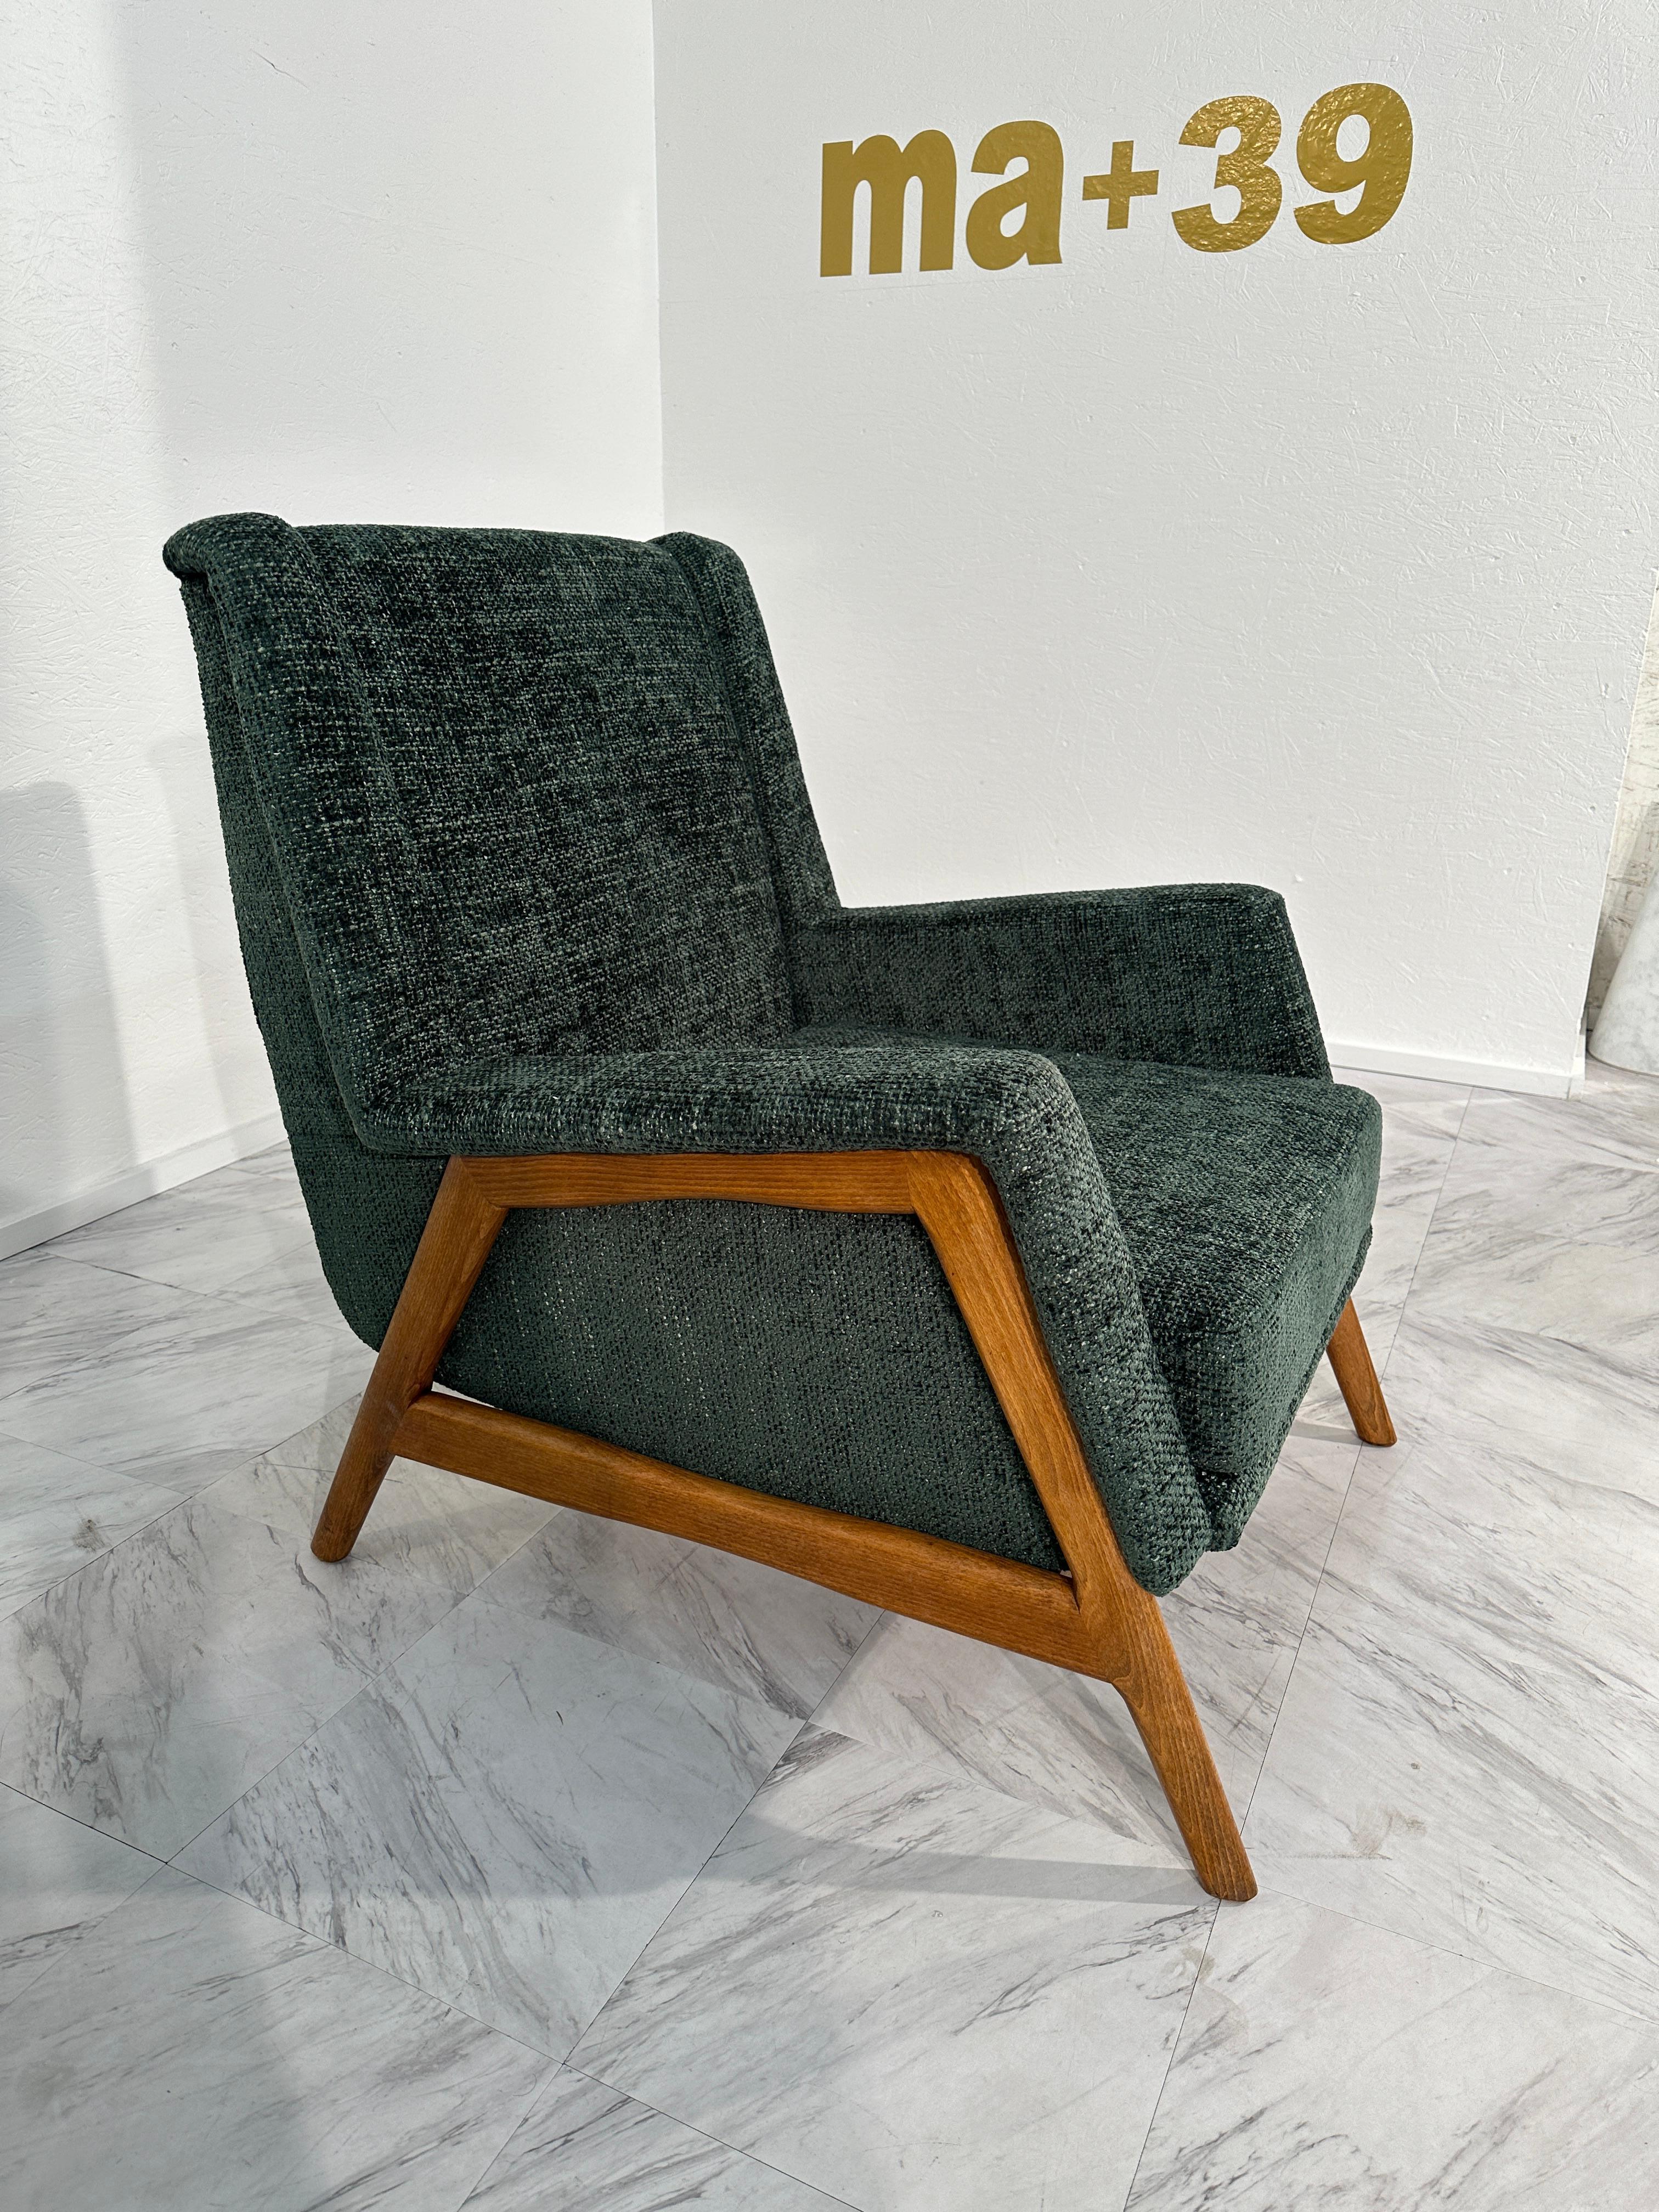 La paire de 2 fauteuils contemporains italiens des années 1970 incarne l'esprit novateur et avant-gardiste du design italien de l'époque. Avec leurs lignes épurées et leurs formes audacieuses, ces fauteuils affichent un mélange parfait de forme et